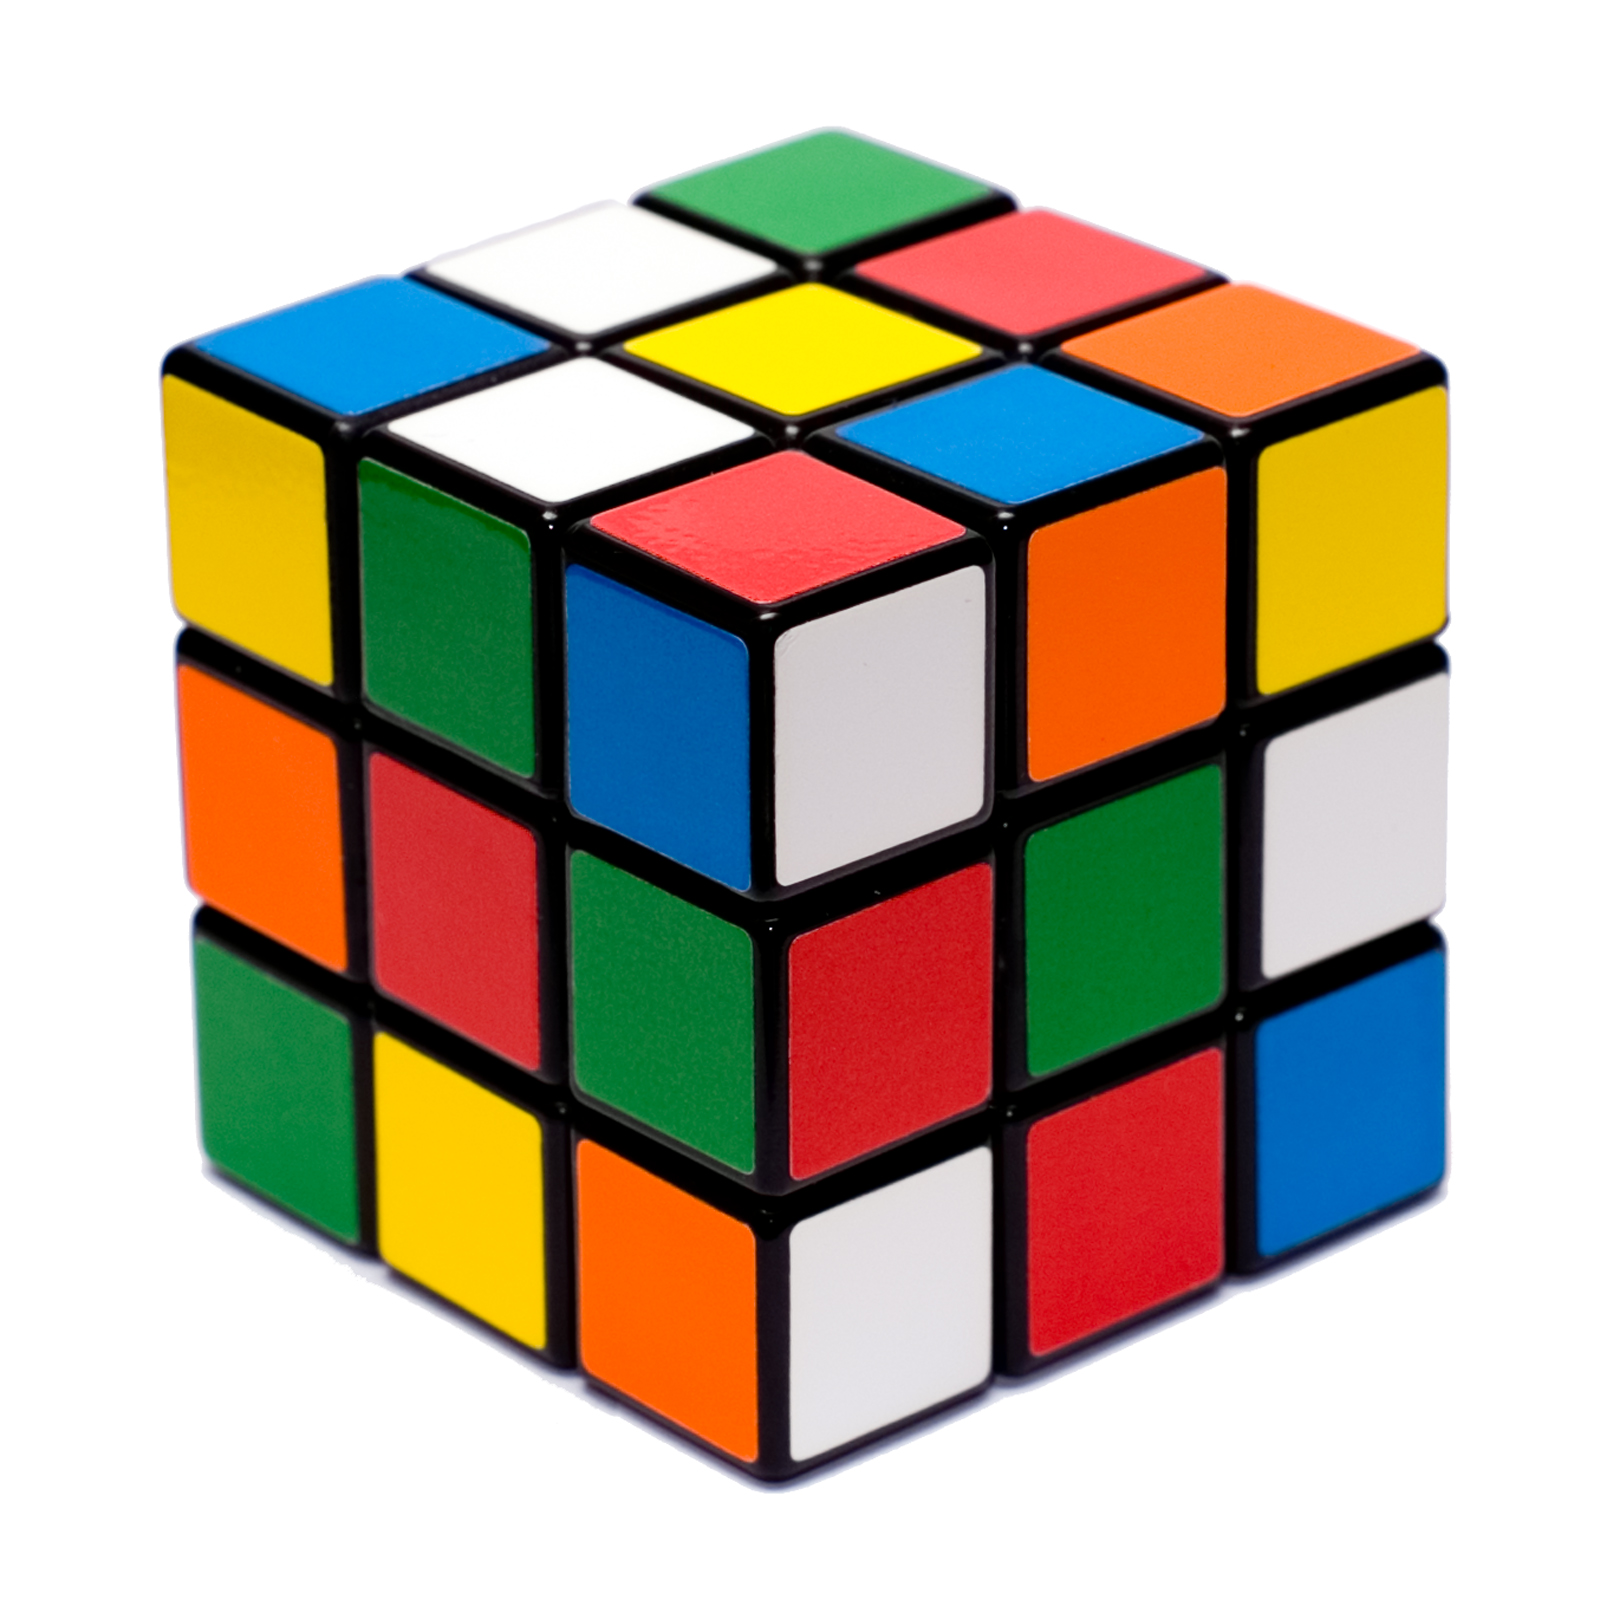 Rubiks_cube_by_keqs.jpg